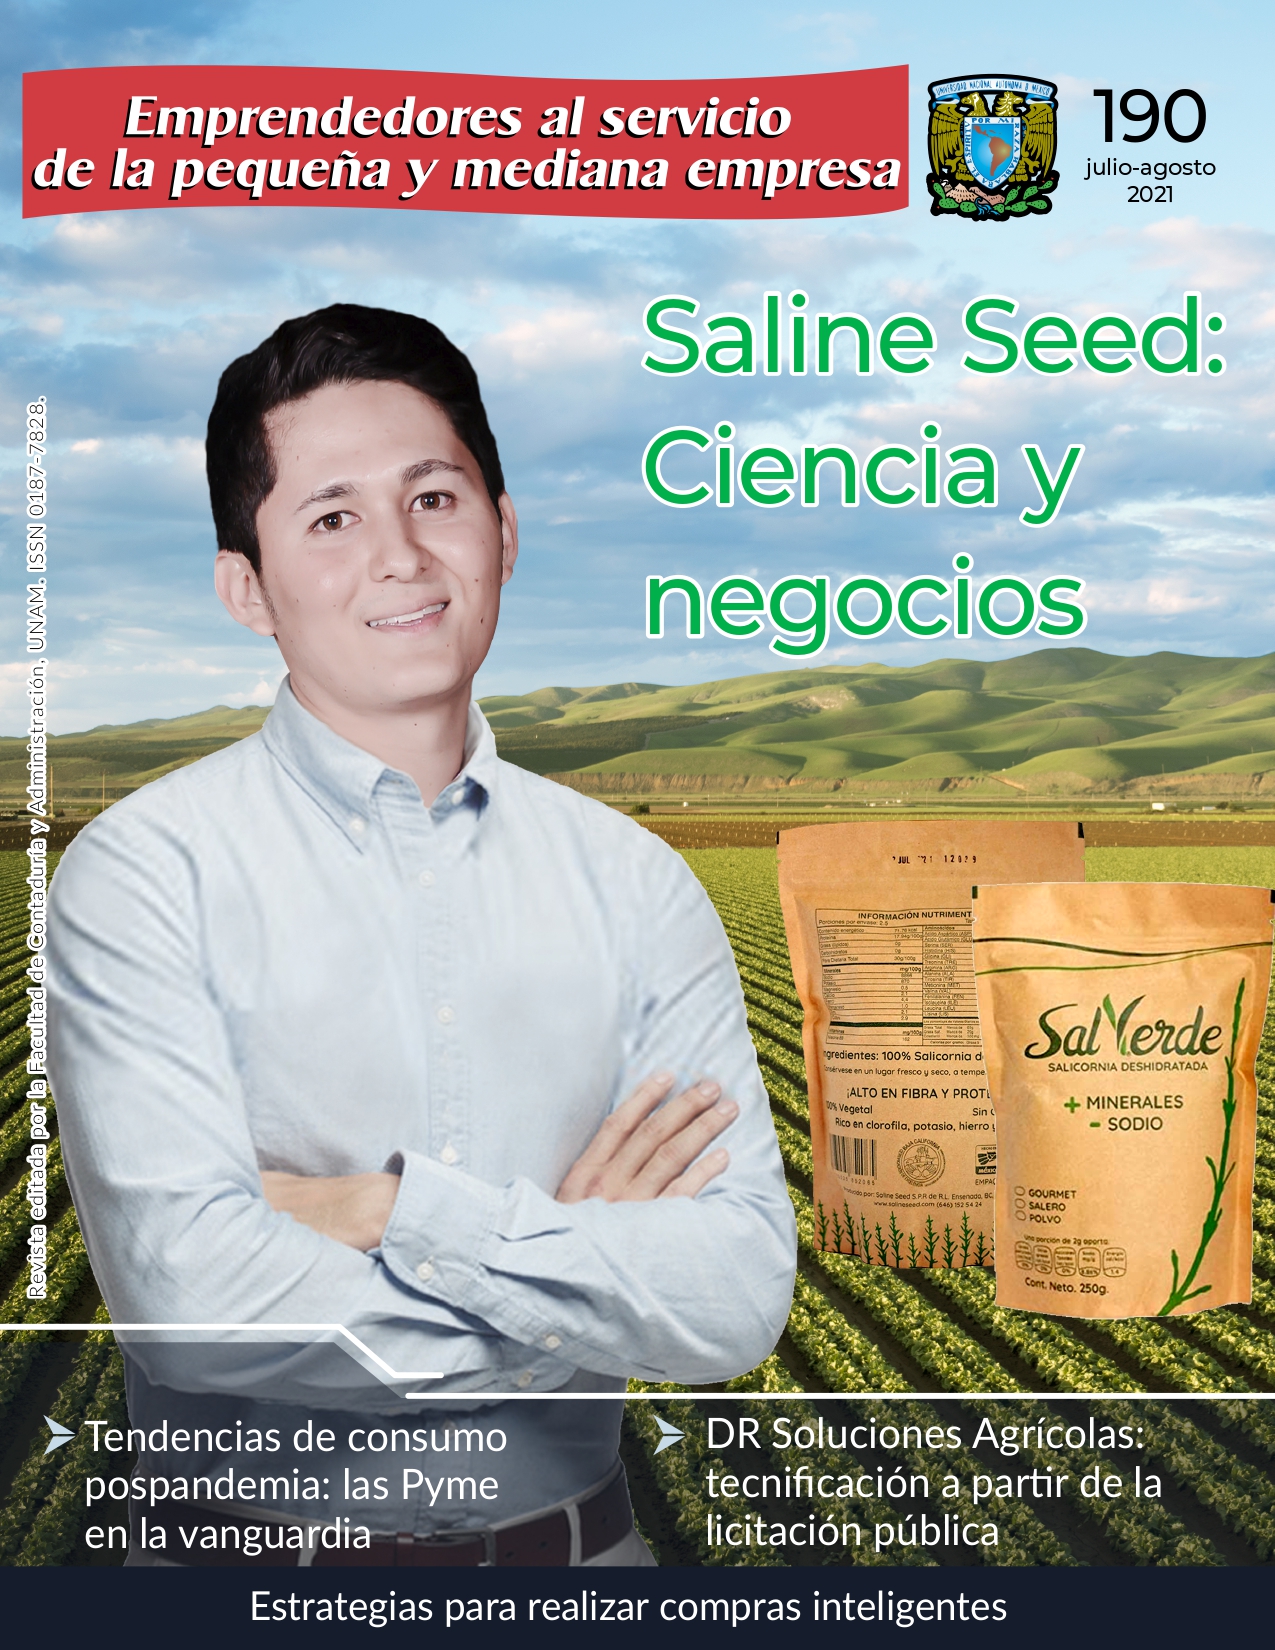 Saline Seed: Ciencia y negocios